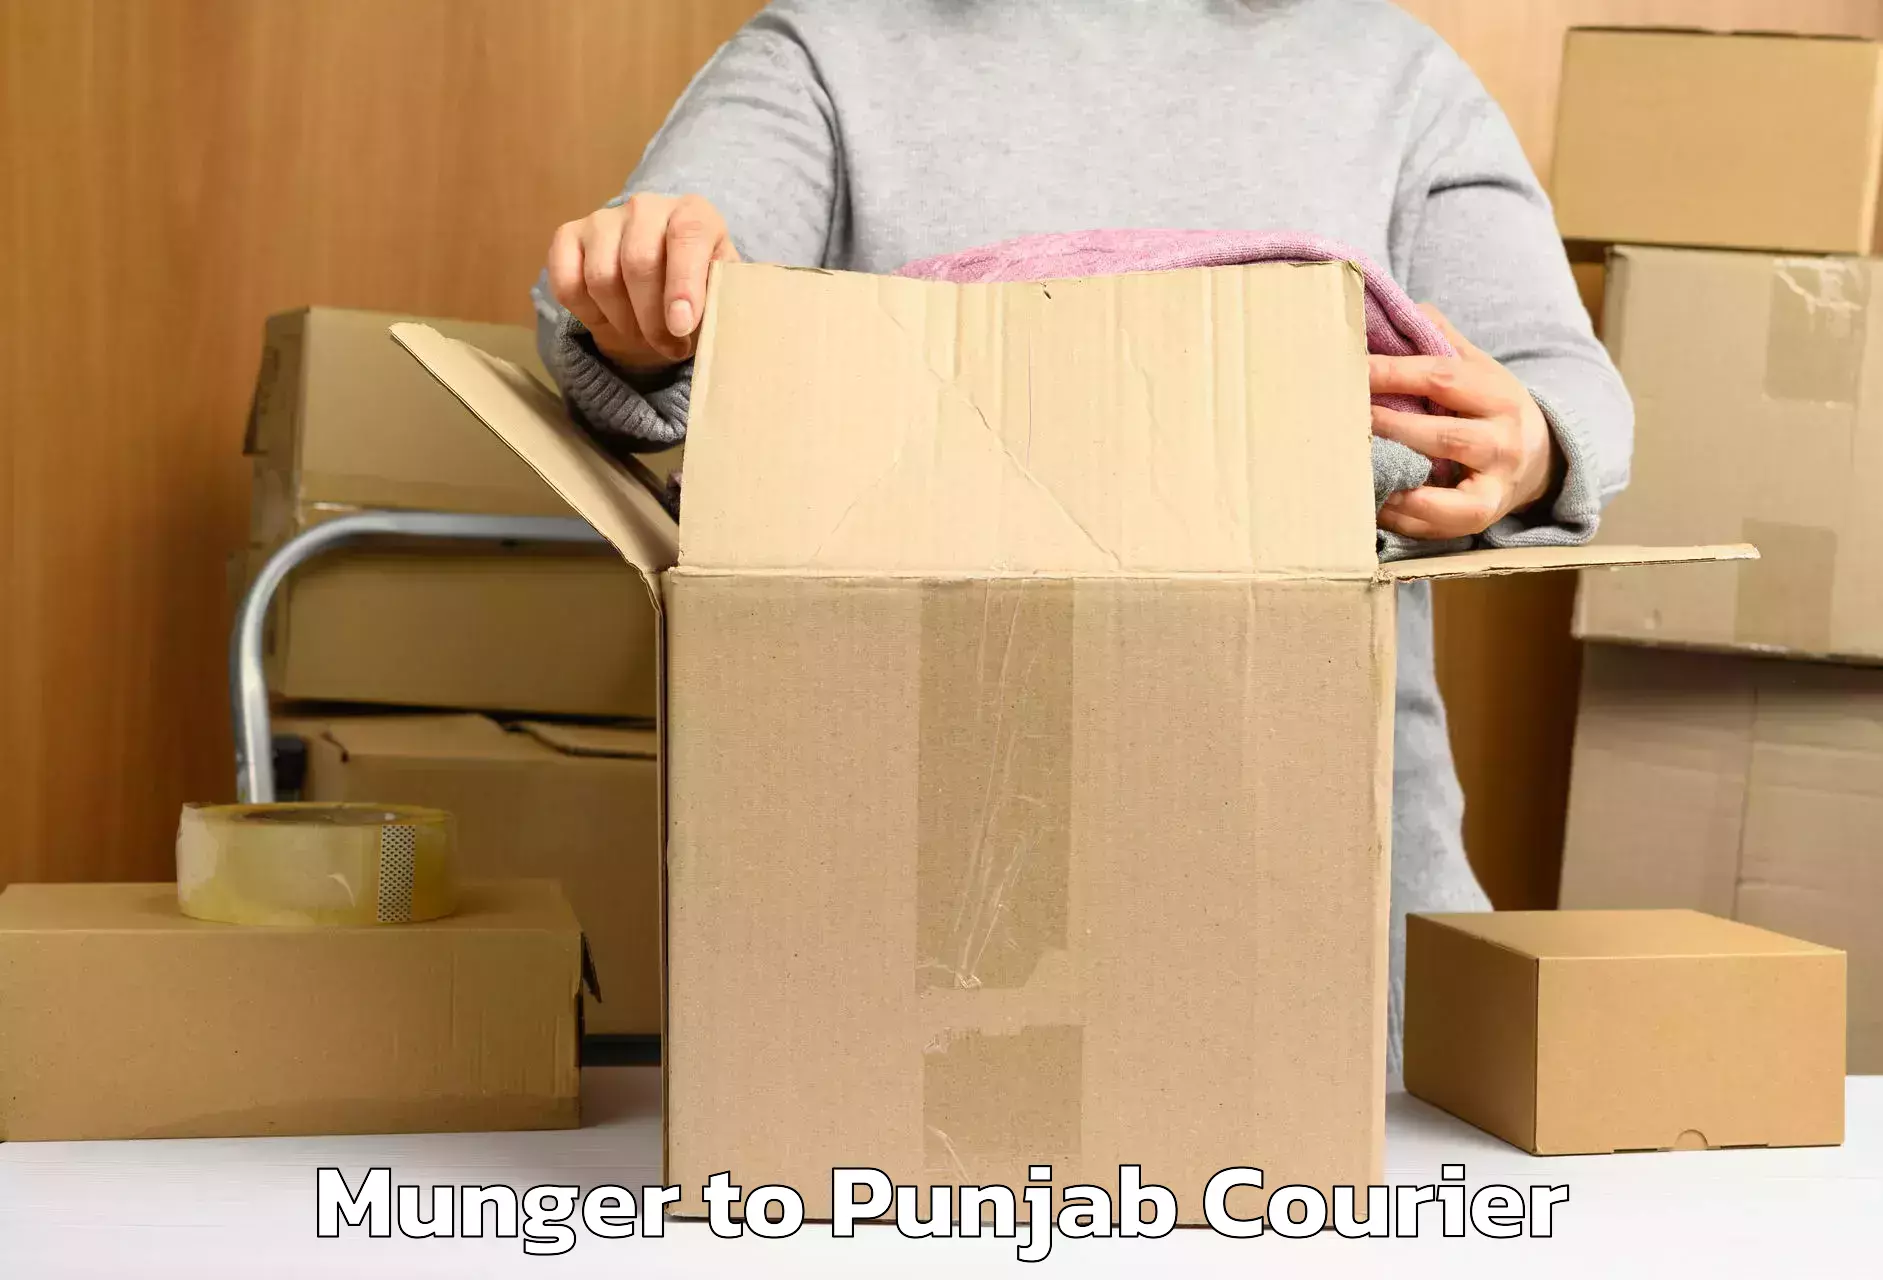 Electronic items luggage shipping Munger to Central University of Punjab Bathinda